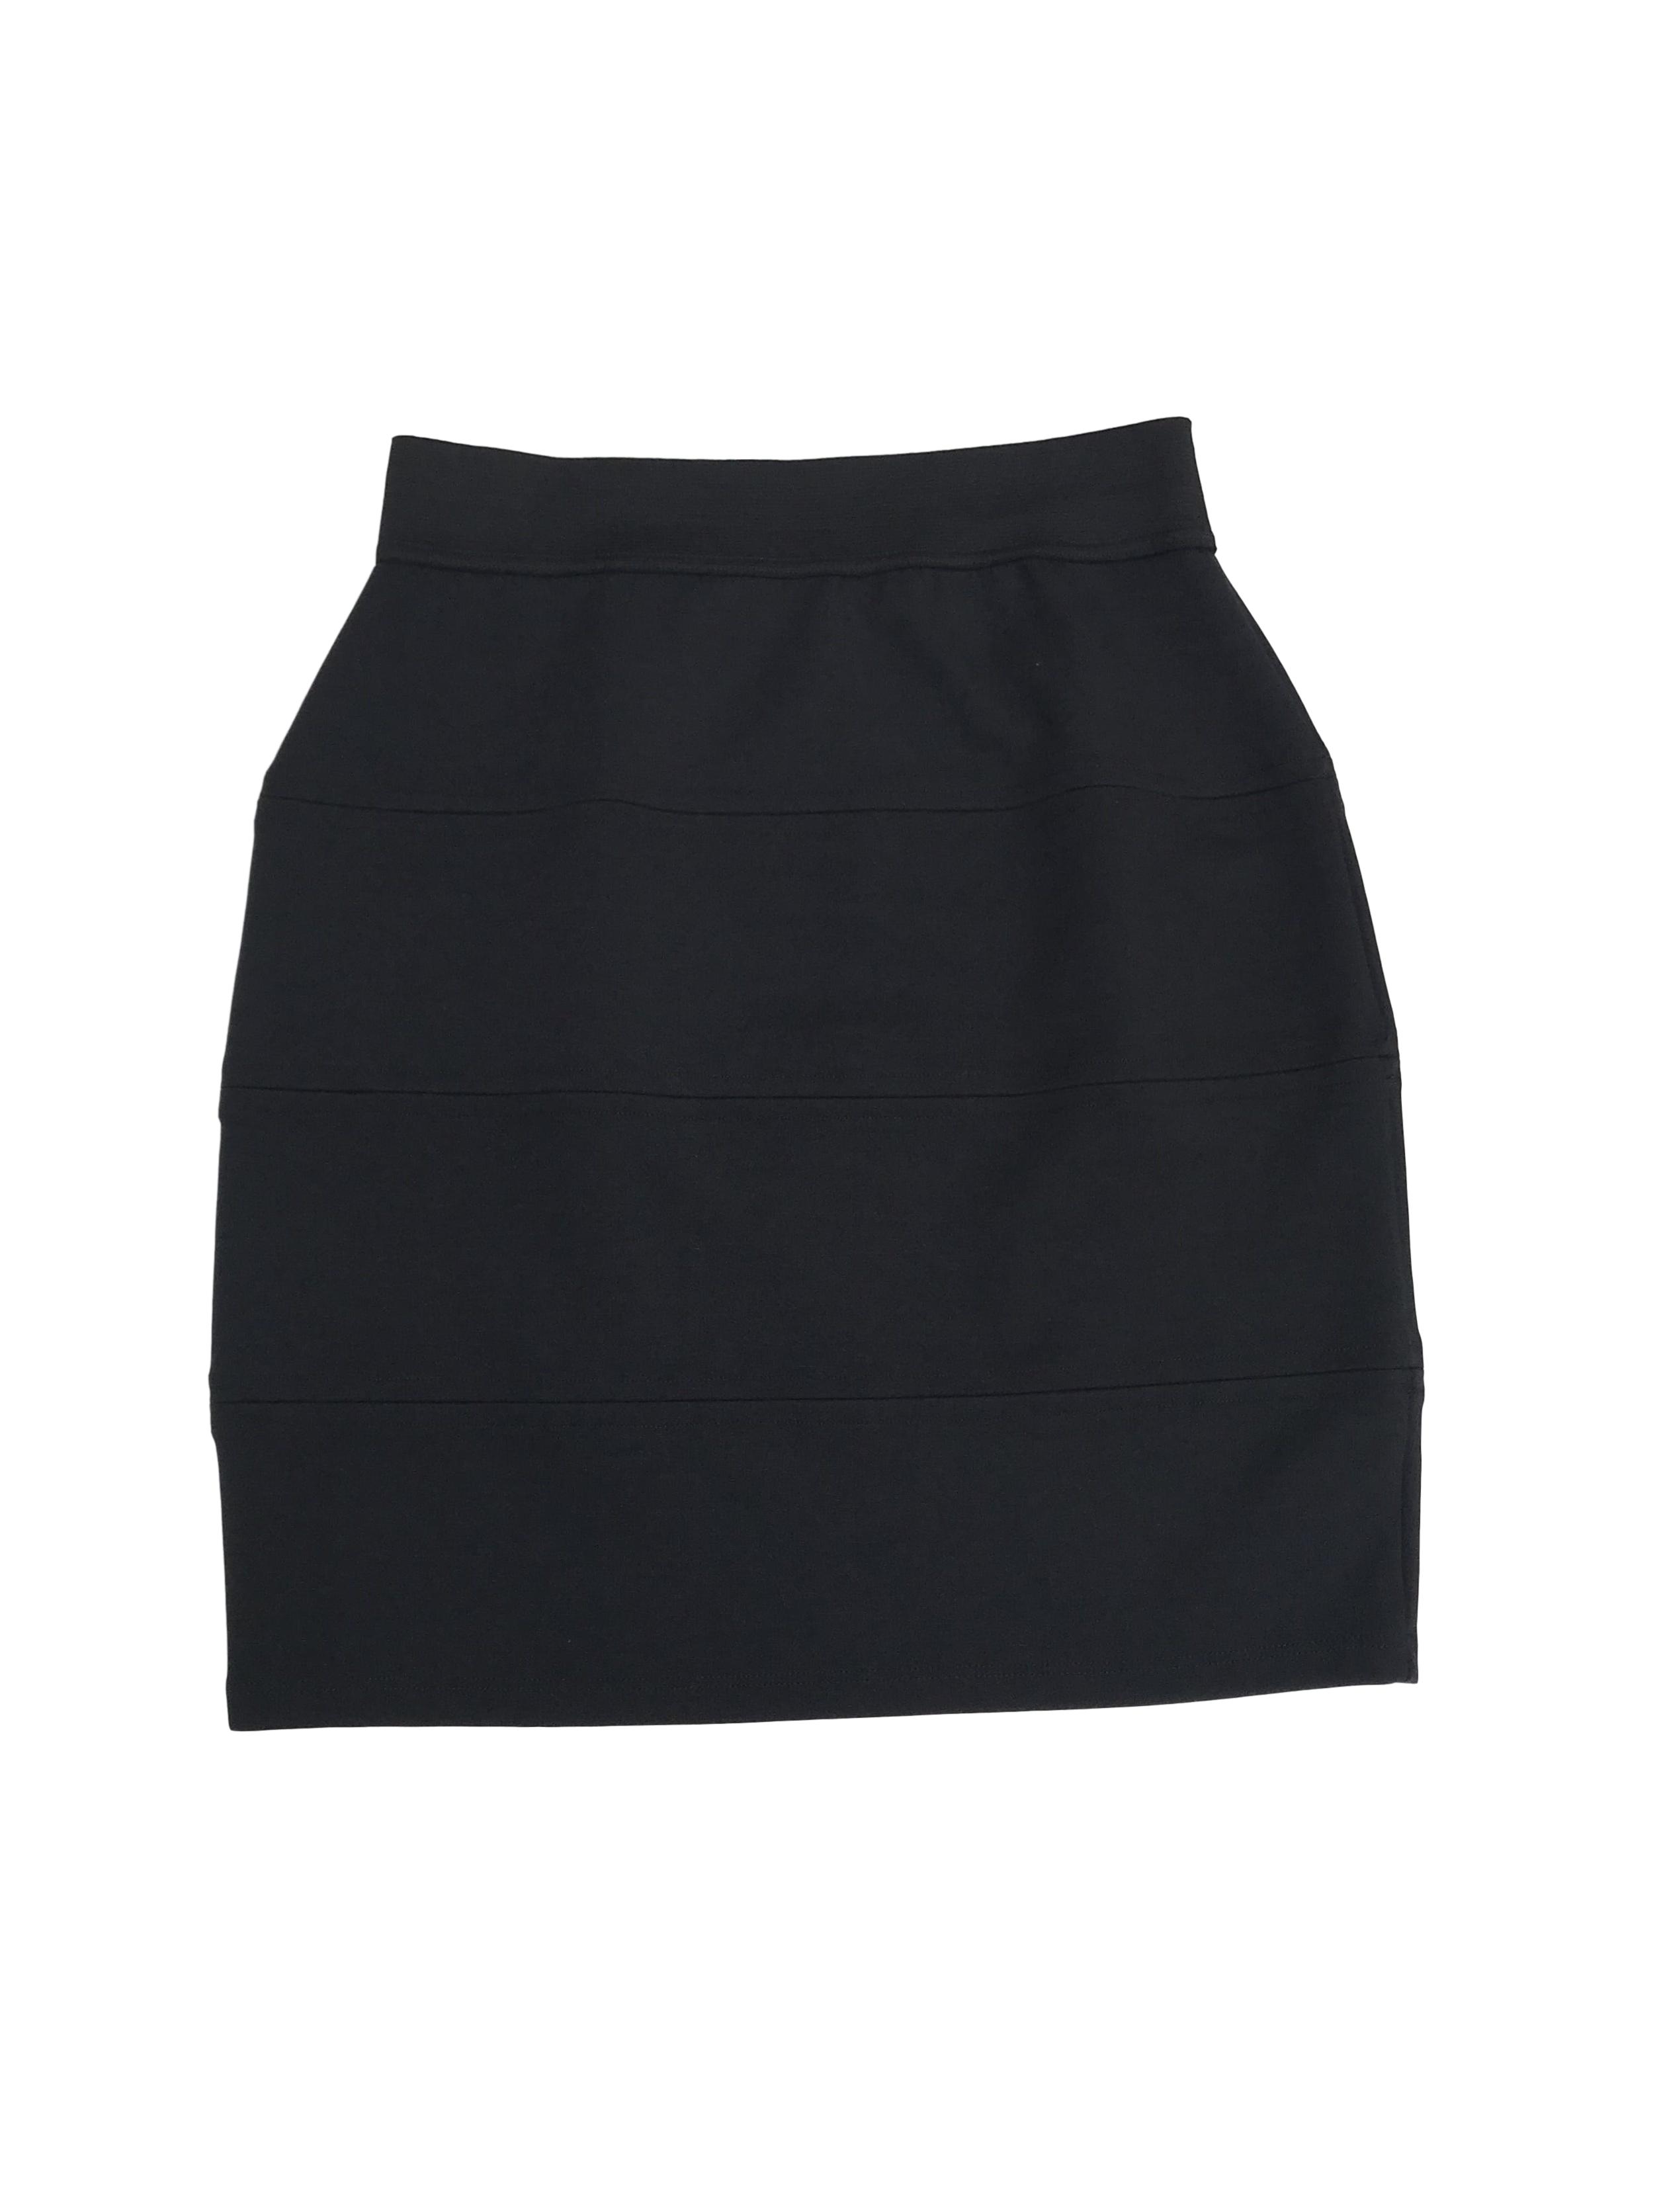 Falda tubo negra, tela tipo algodón strech, cortes horizontales y elástico en la cintura. Largo 47cm